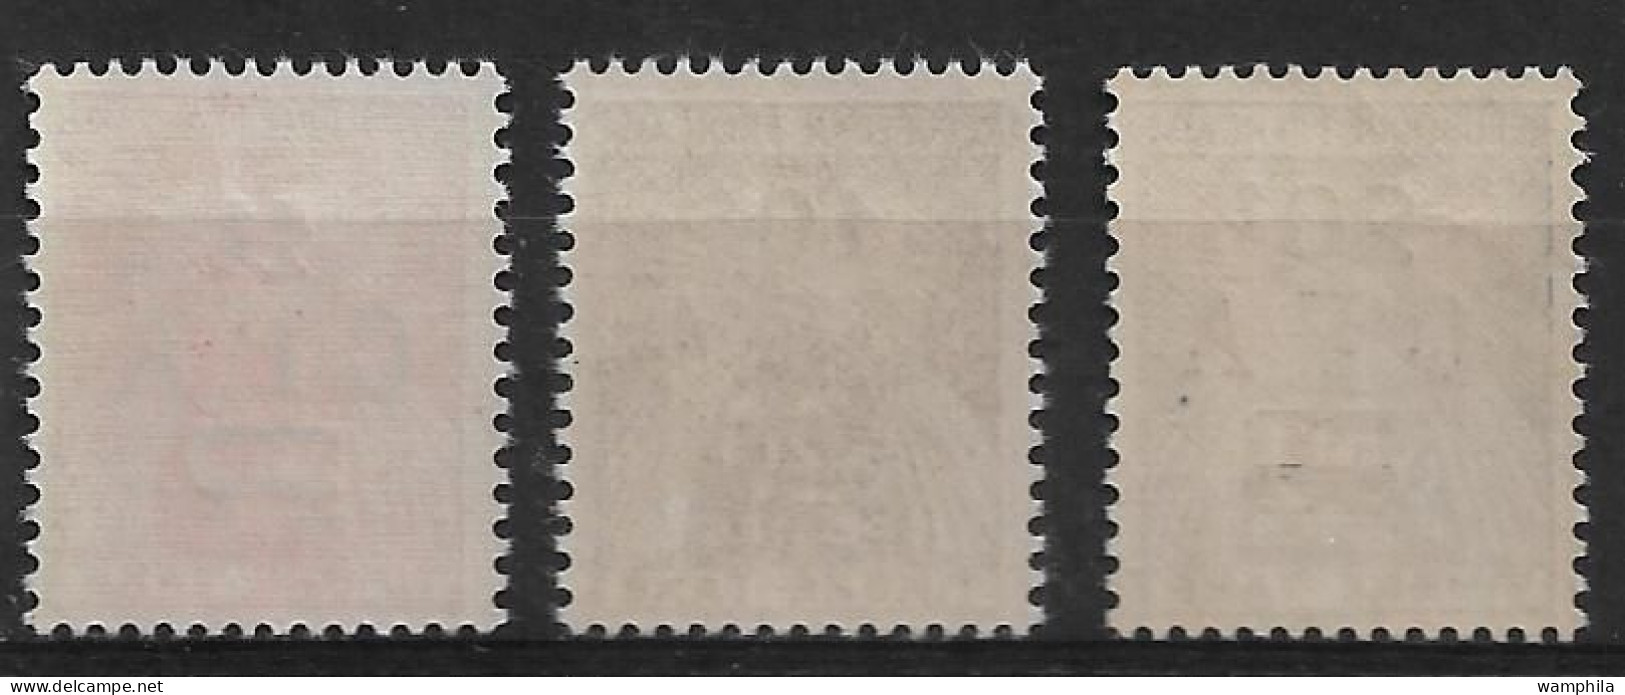 Réunion 1949/50 Taxe N°45/47** Cote 37€ - Postage Due